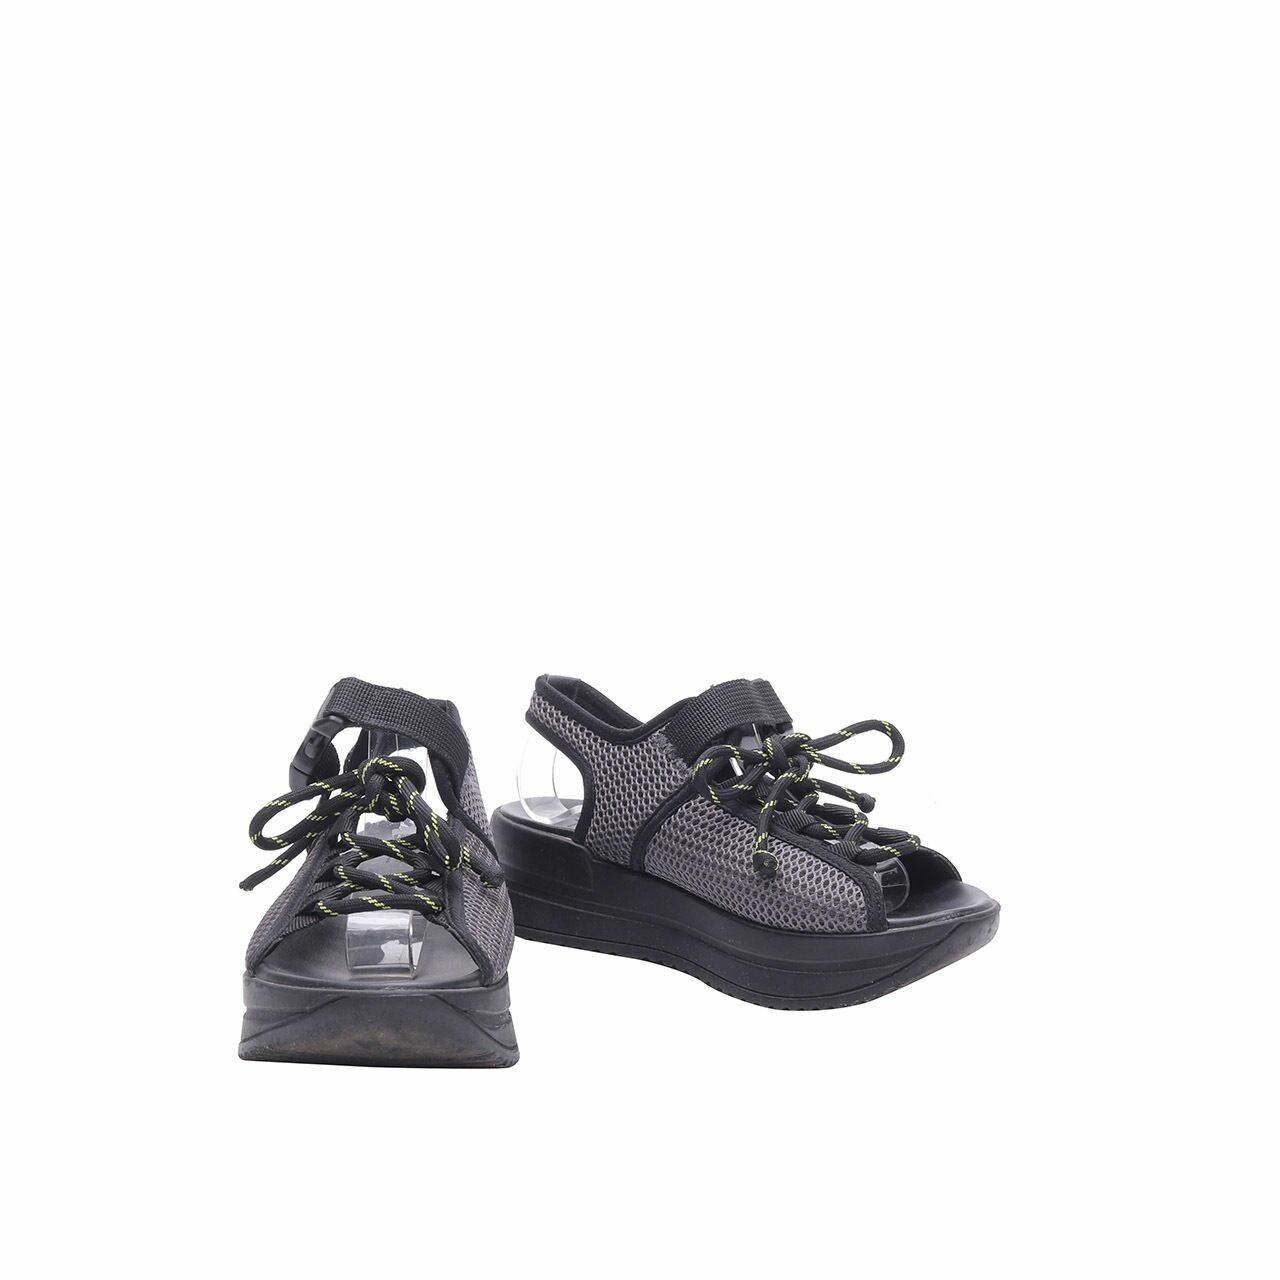 MKS Benva Black & Grey Sandals